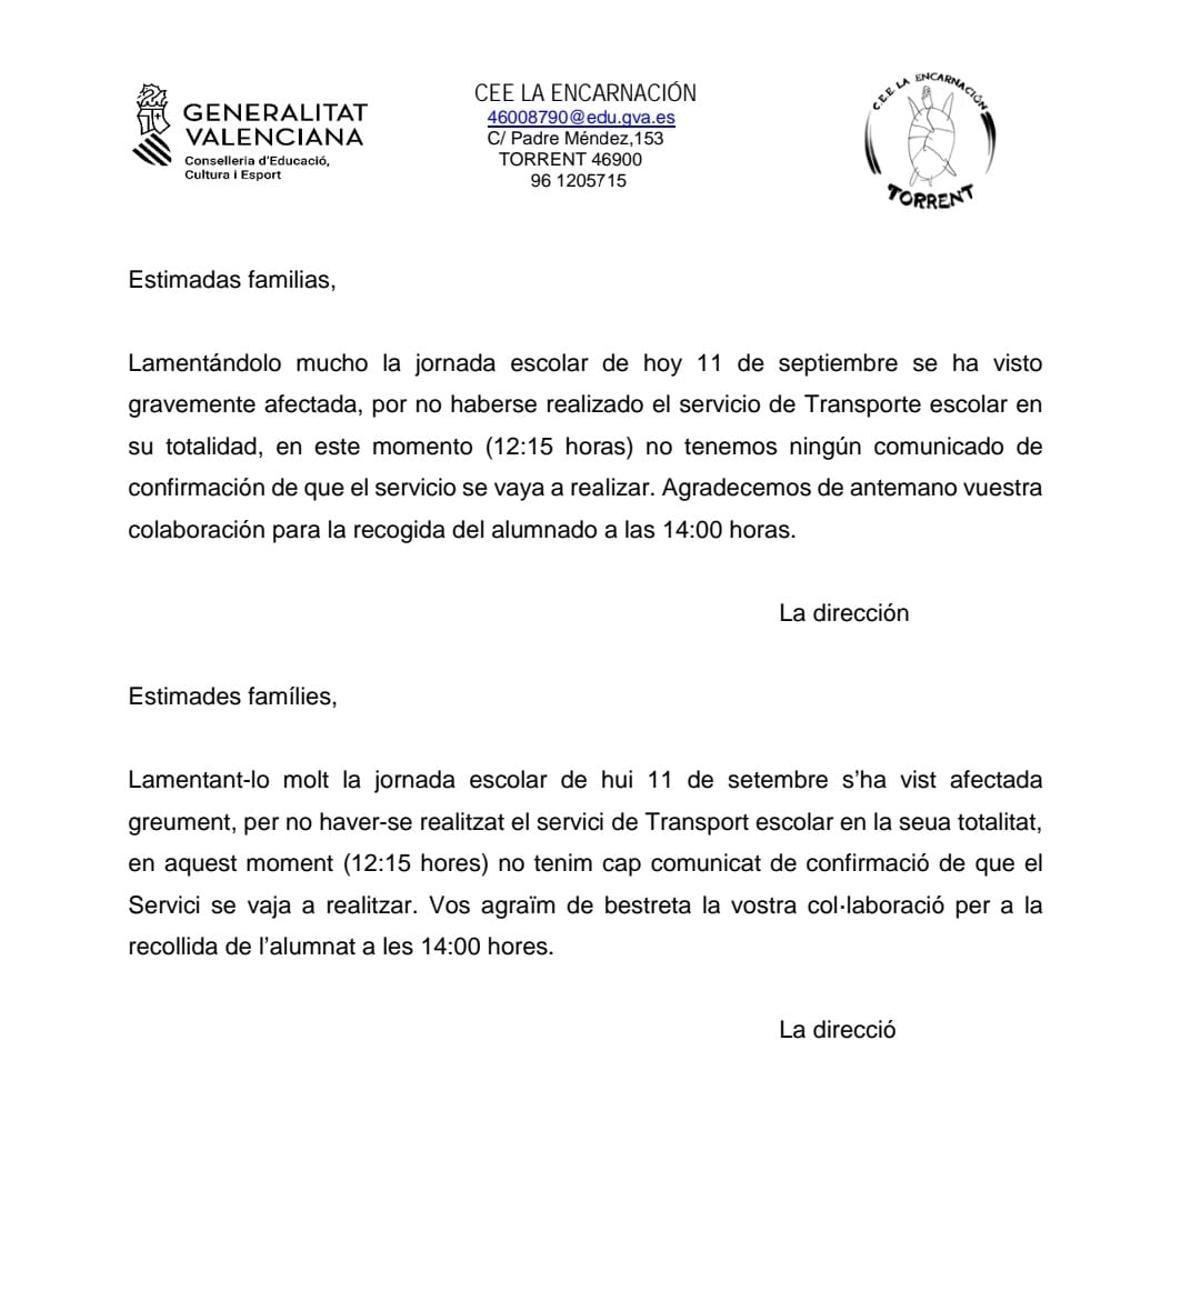 Comunicado emitido por el CEE La Encarnación tras el incidente